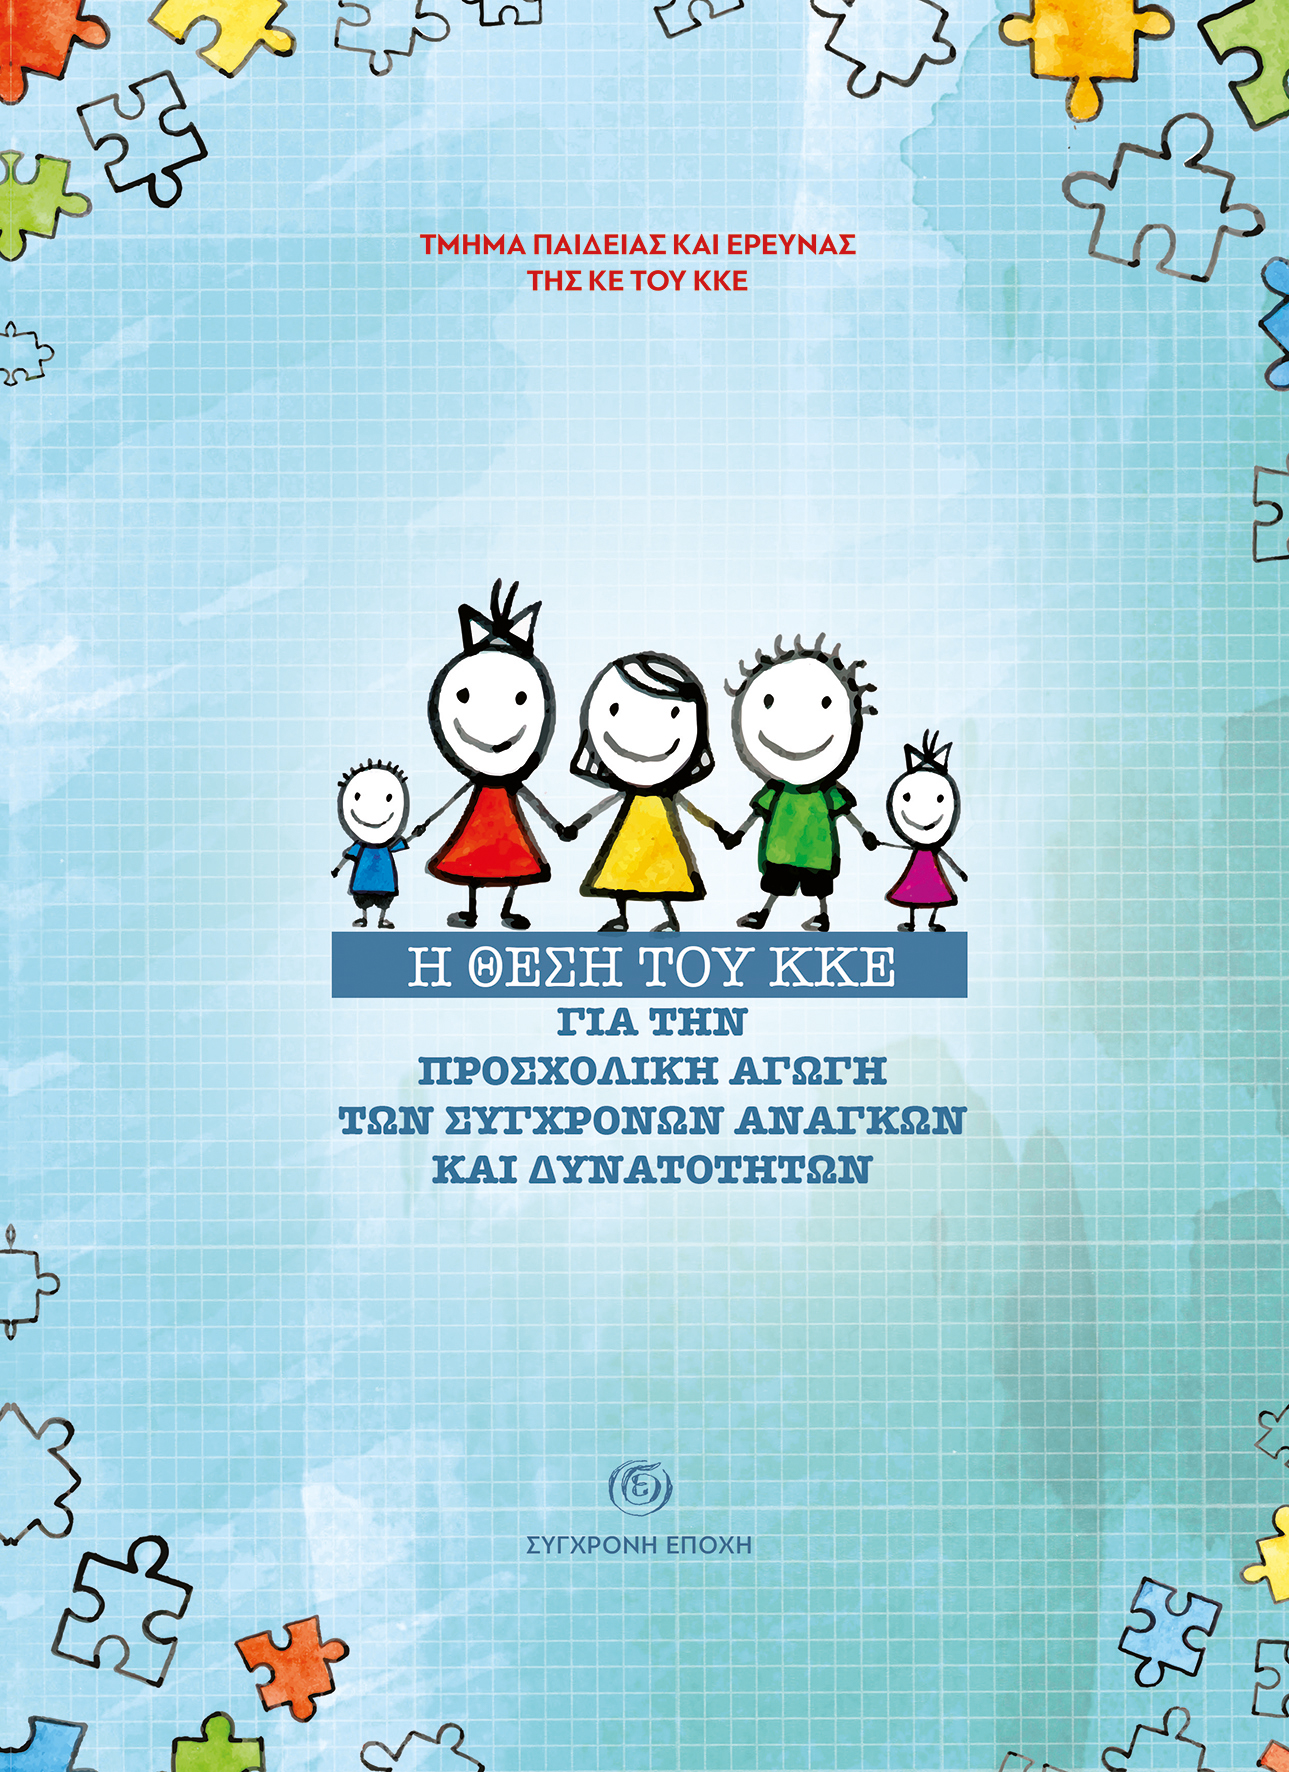 Το εξώφυλλο της έκδοσης που κυκλοφορεί από τη «Σύγχρονη Εποχή» και τις Οργανώσεις του ΚΚΕ